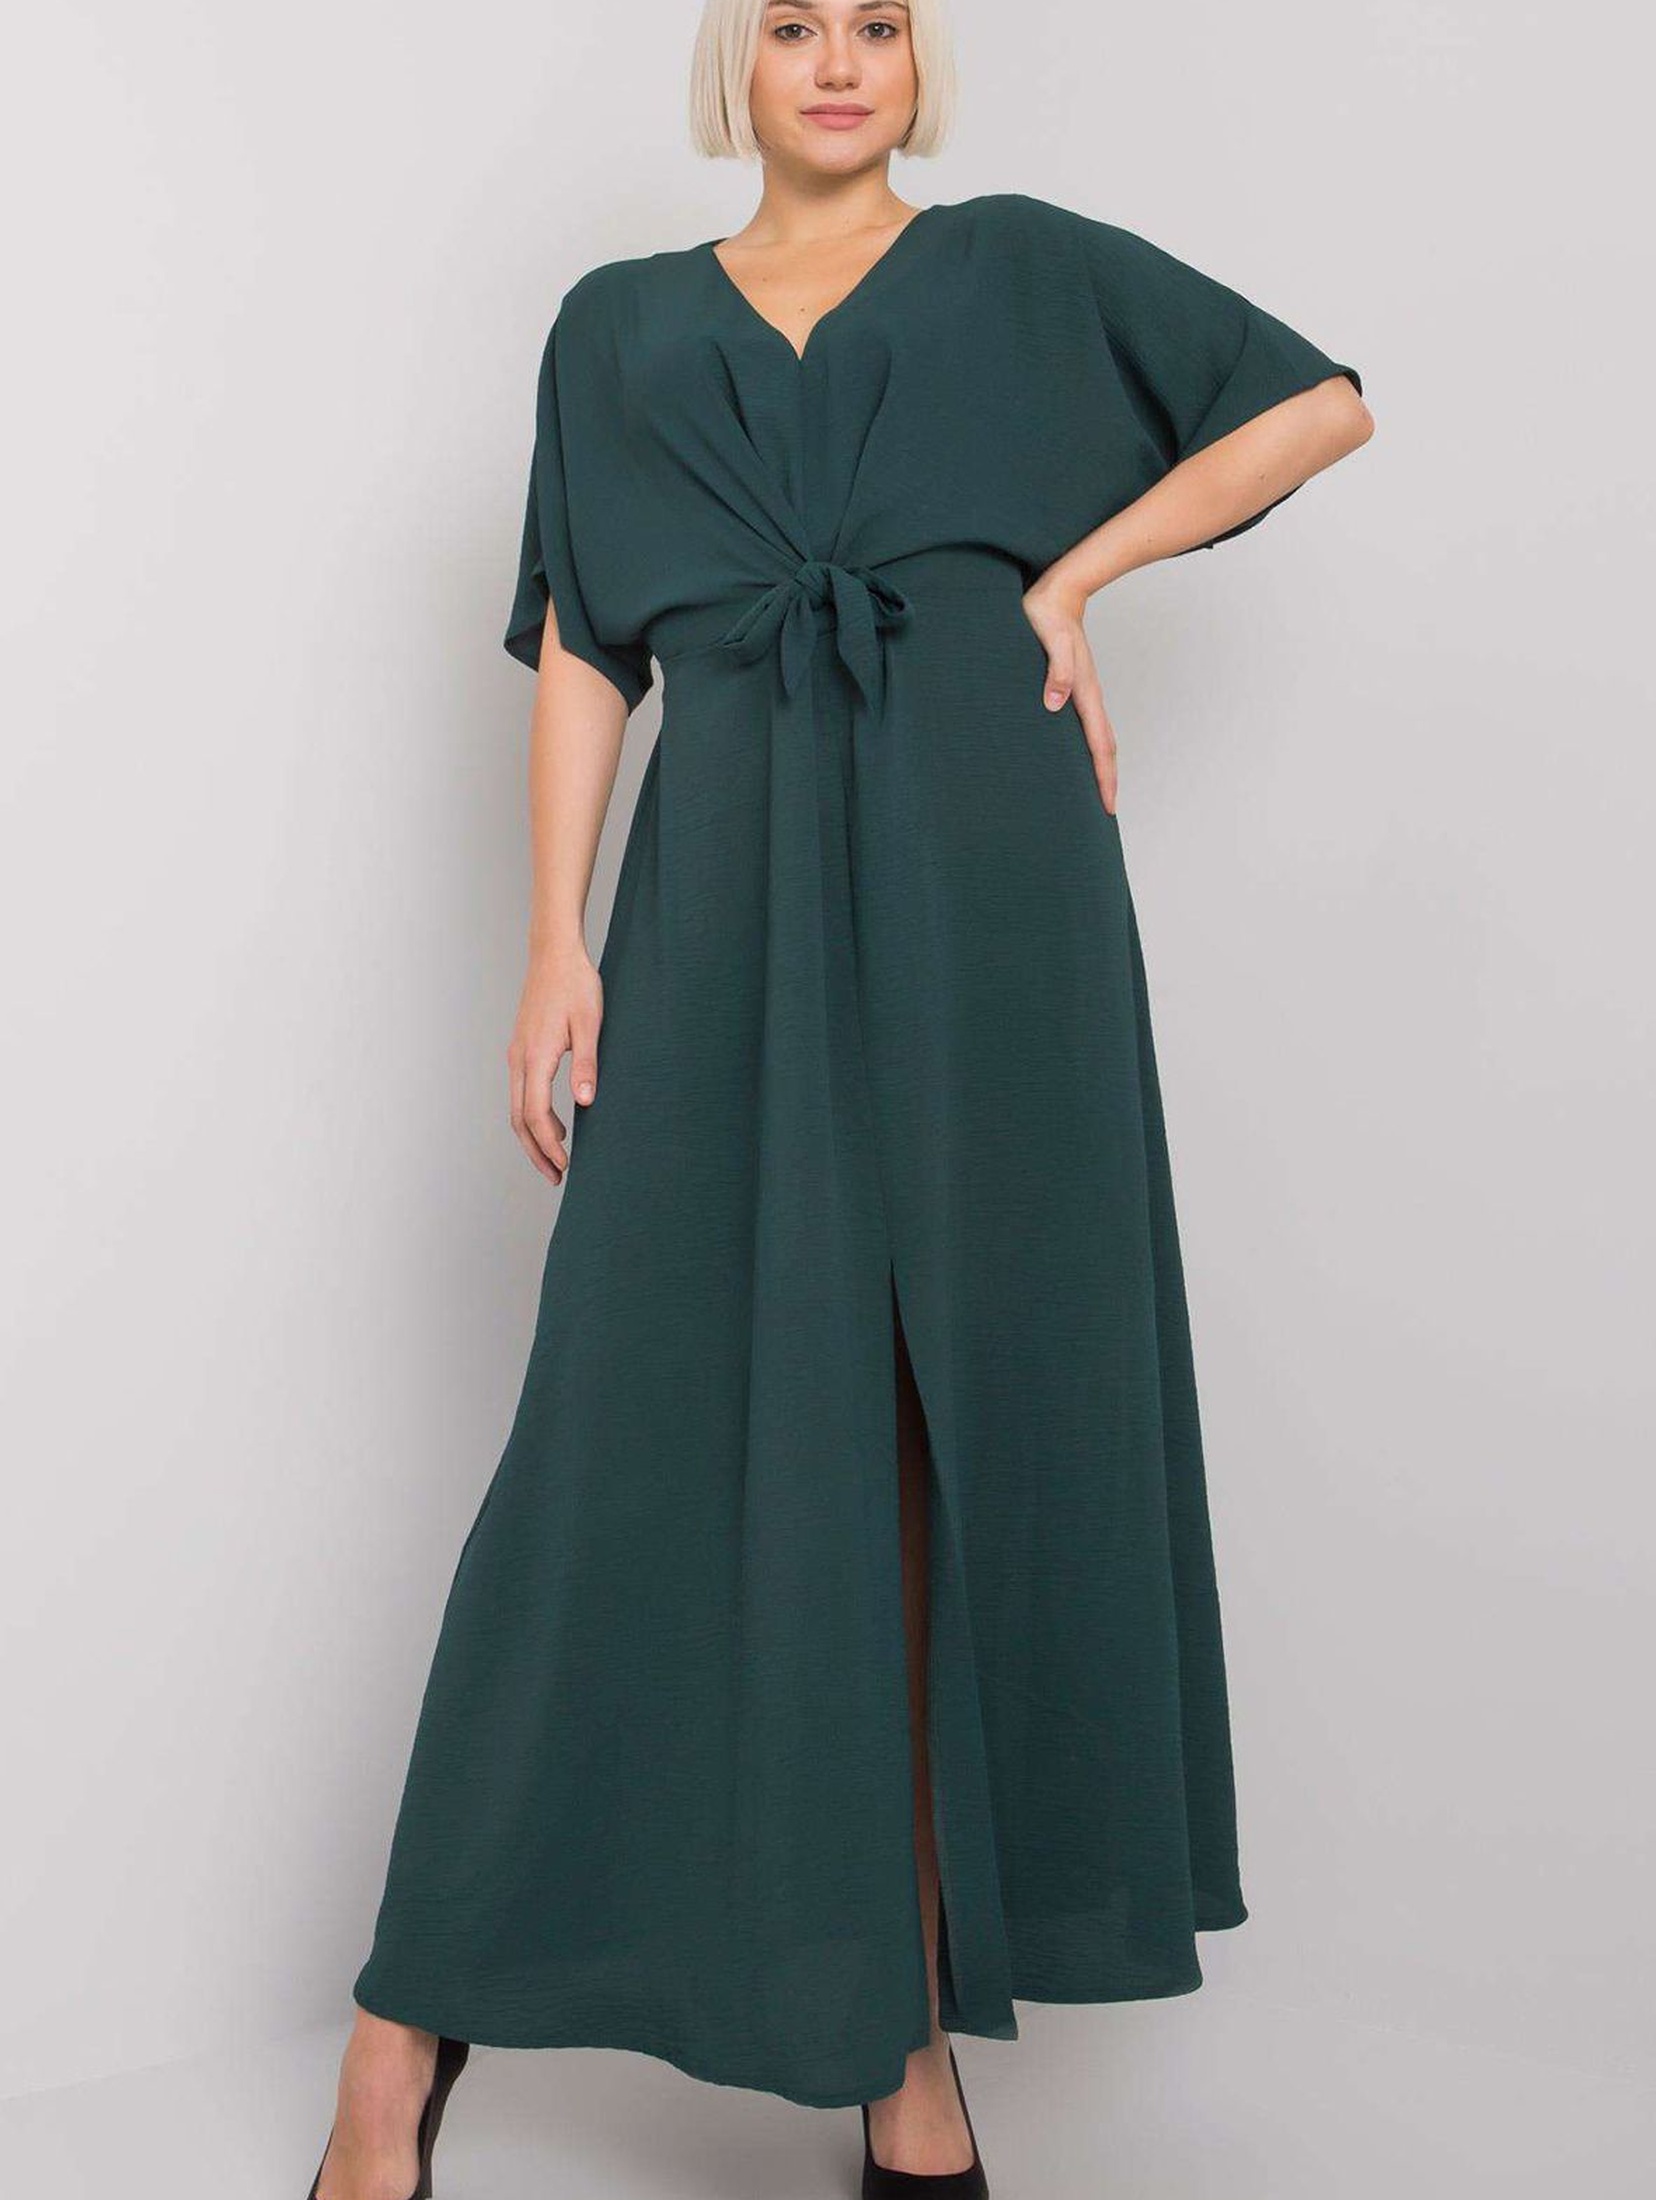 Długa sukienka damska z krótkim rękawem - ciemny zielony